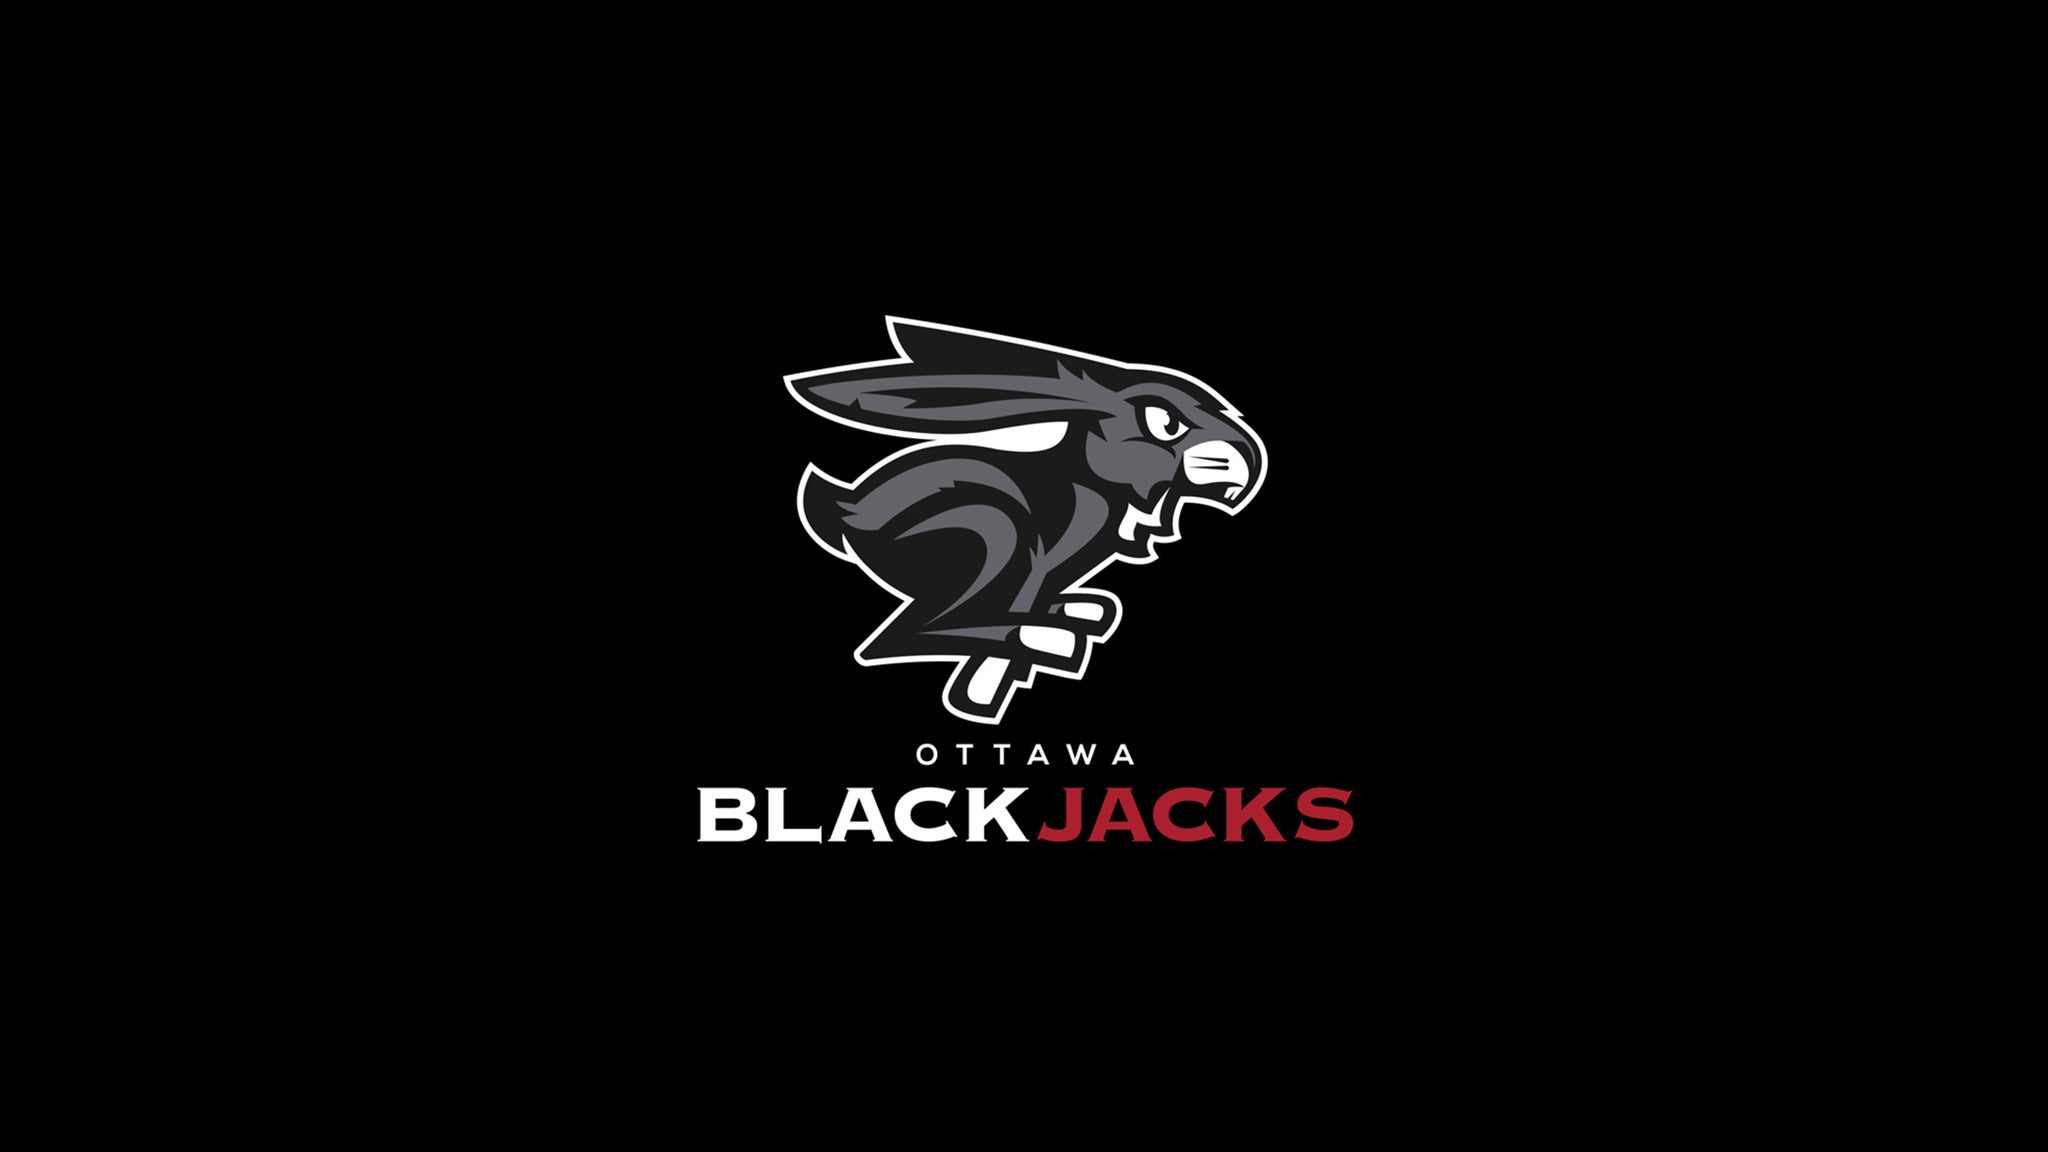 Ottawa BlackJacks vs. Scarborough Shooting Stars in Ottawa promo photo for Fan Zone  presale offer code